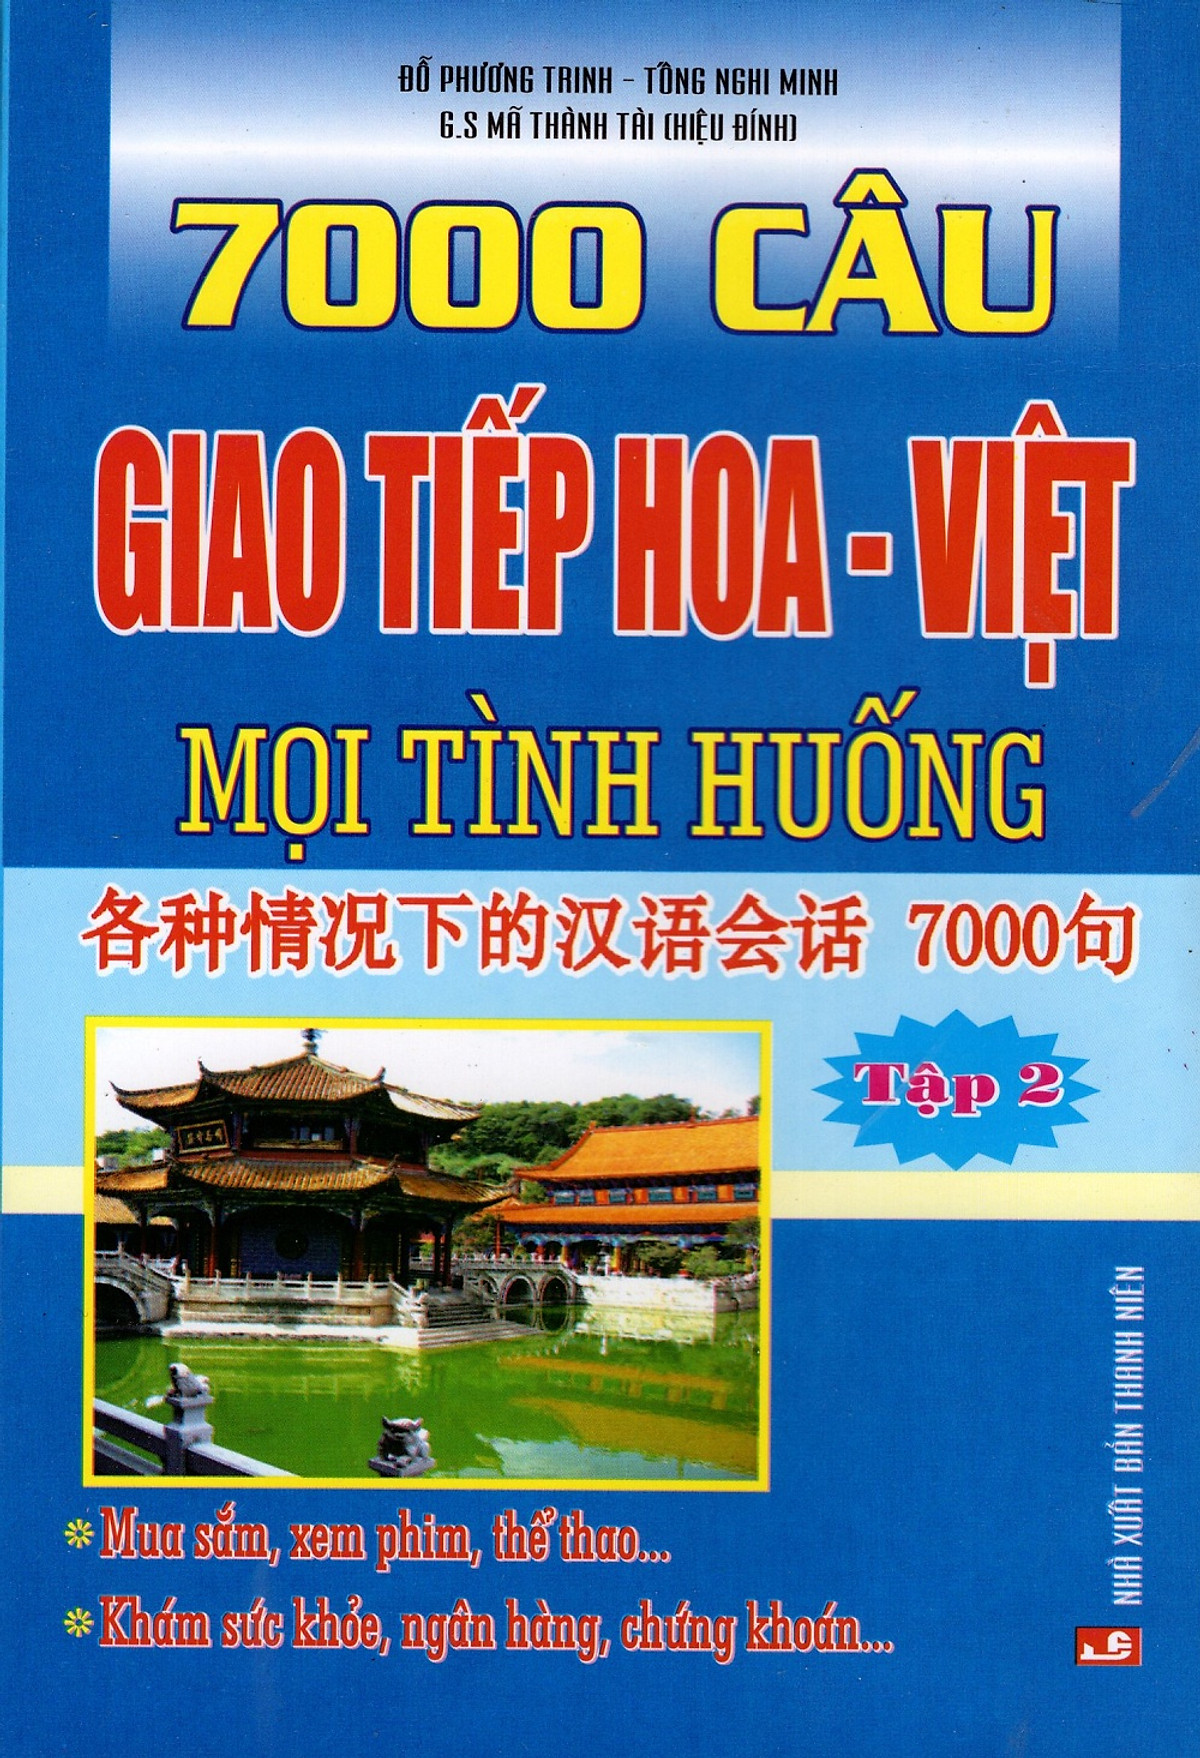 7000 Câu Giao Tiếp Hoa - Việt Mọi Tình Huống (Tập 2)